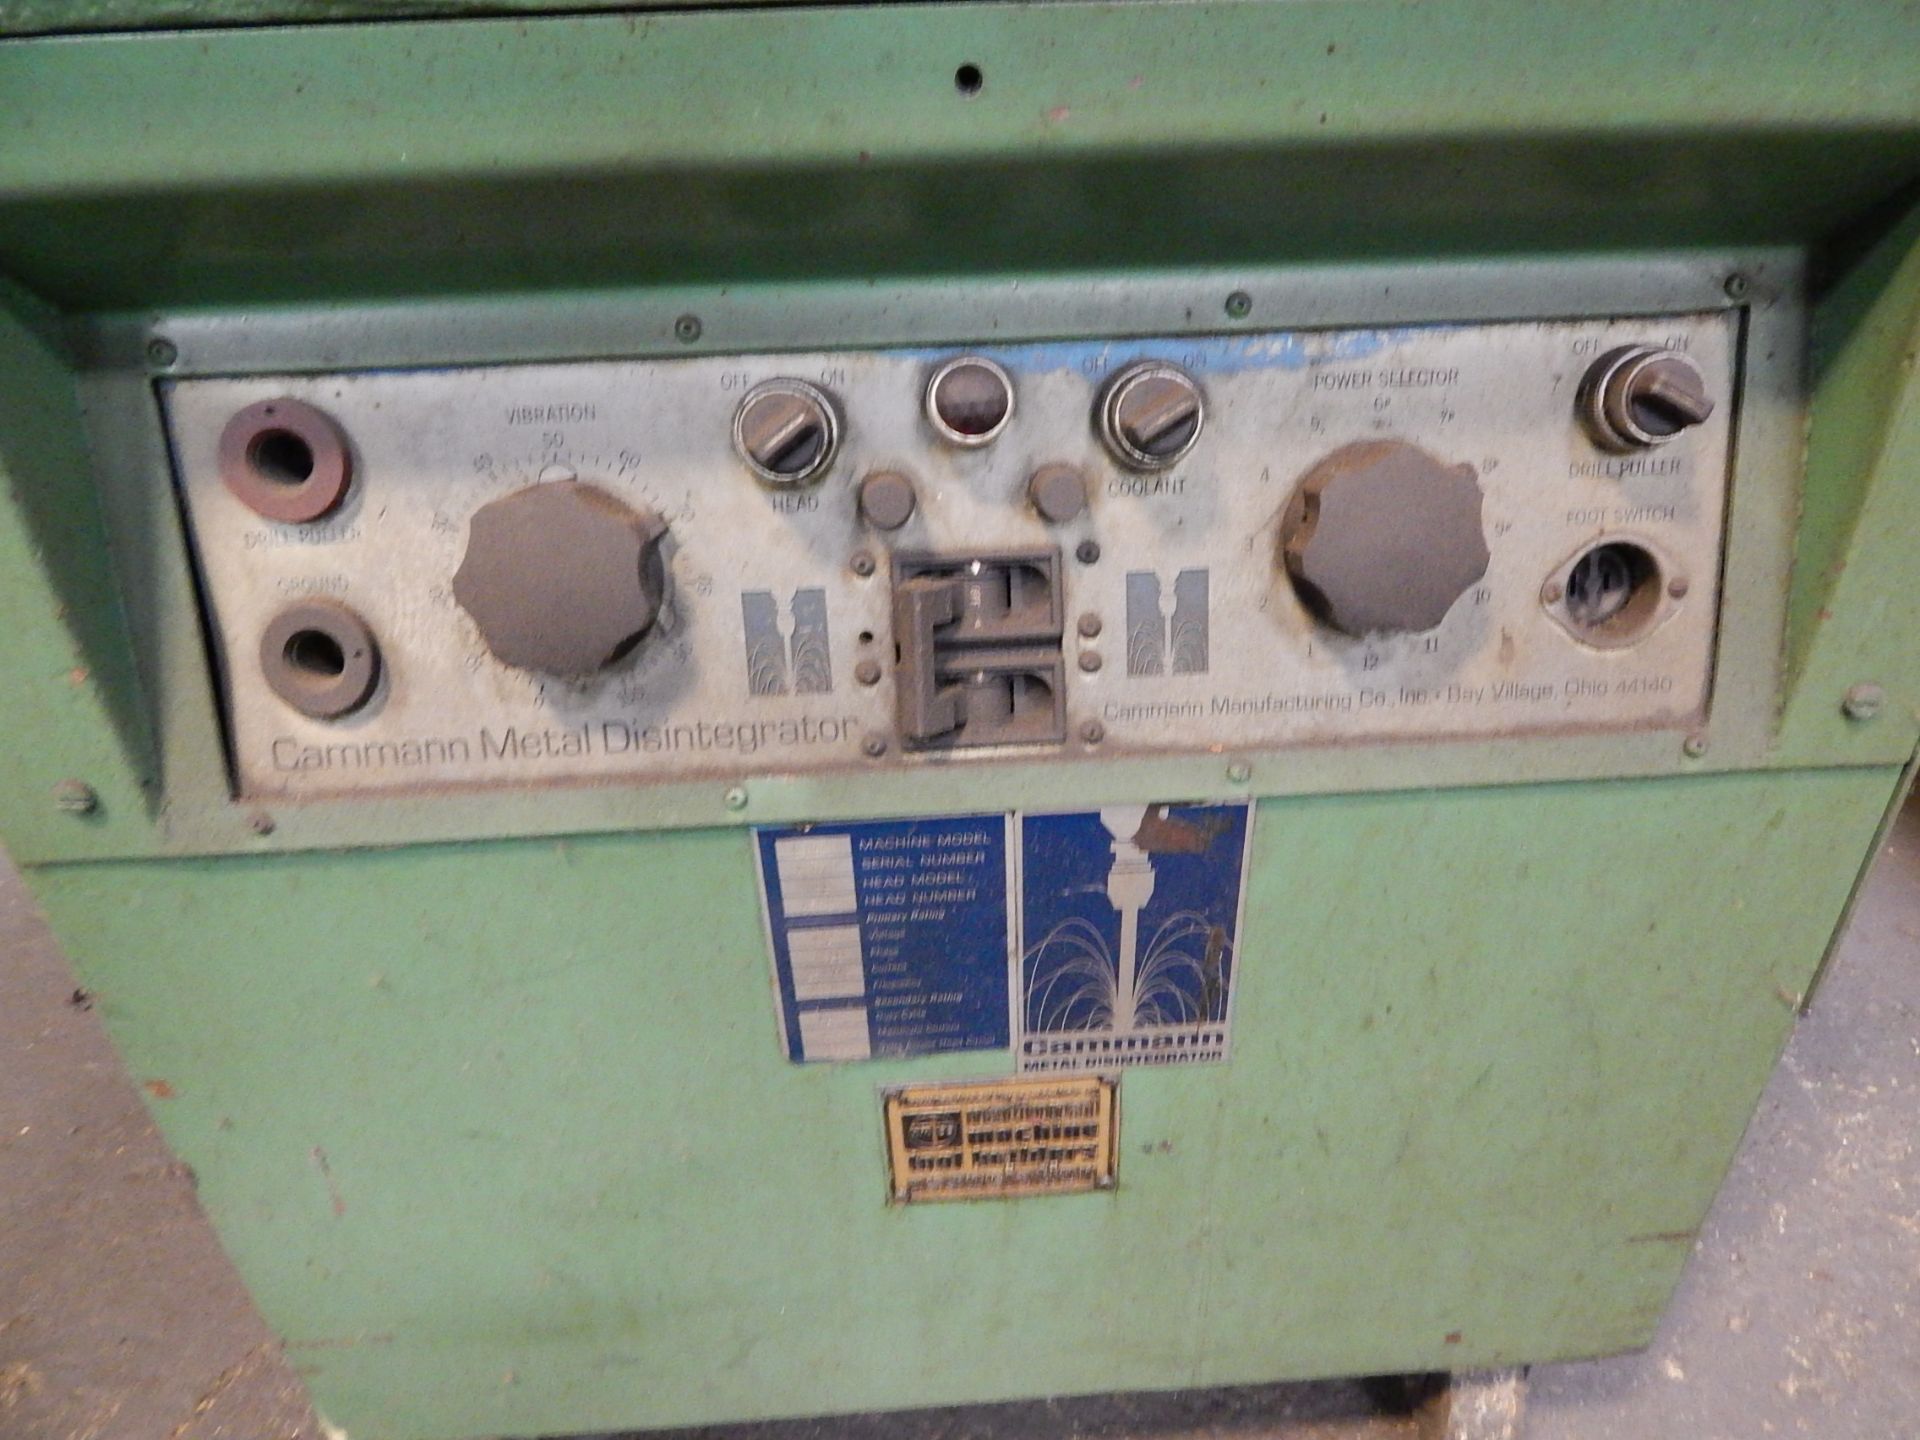 Cammann Model C-96 Tap Disintegrator, s/n 12570, Note: Needs Repair - Image 5 of 9